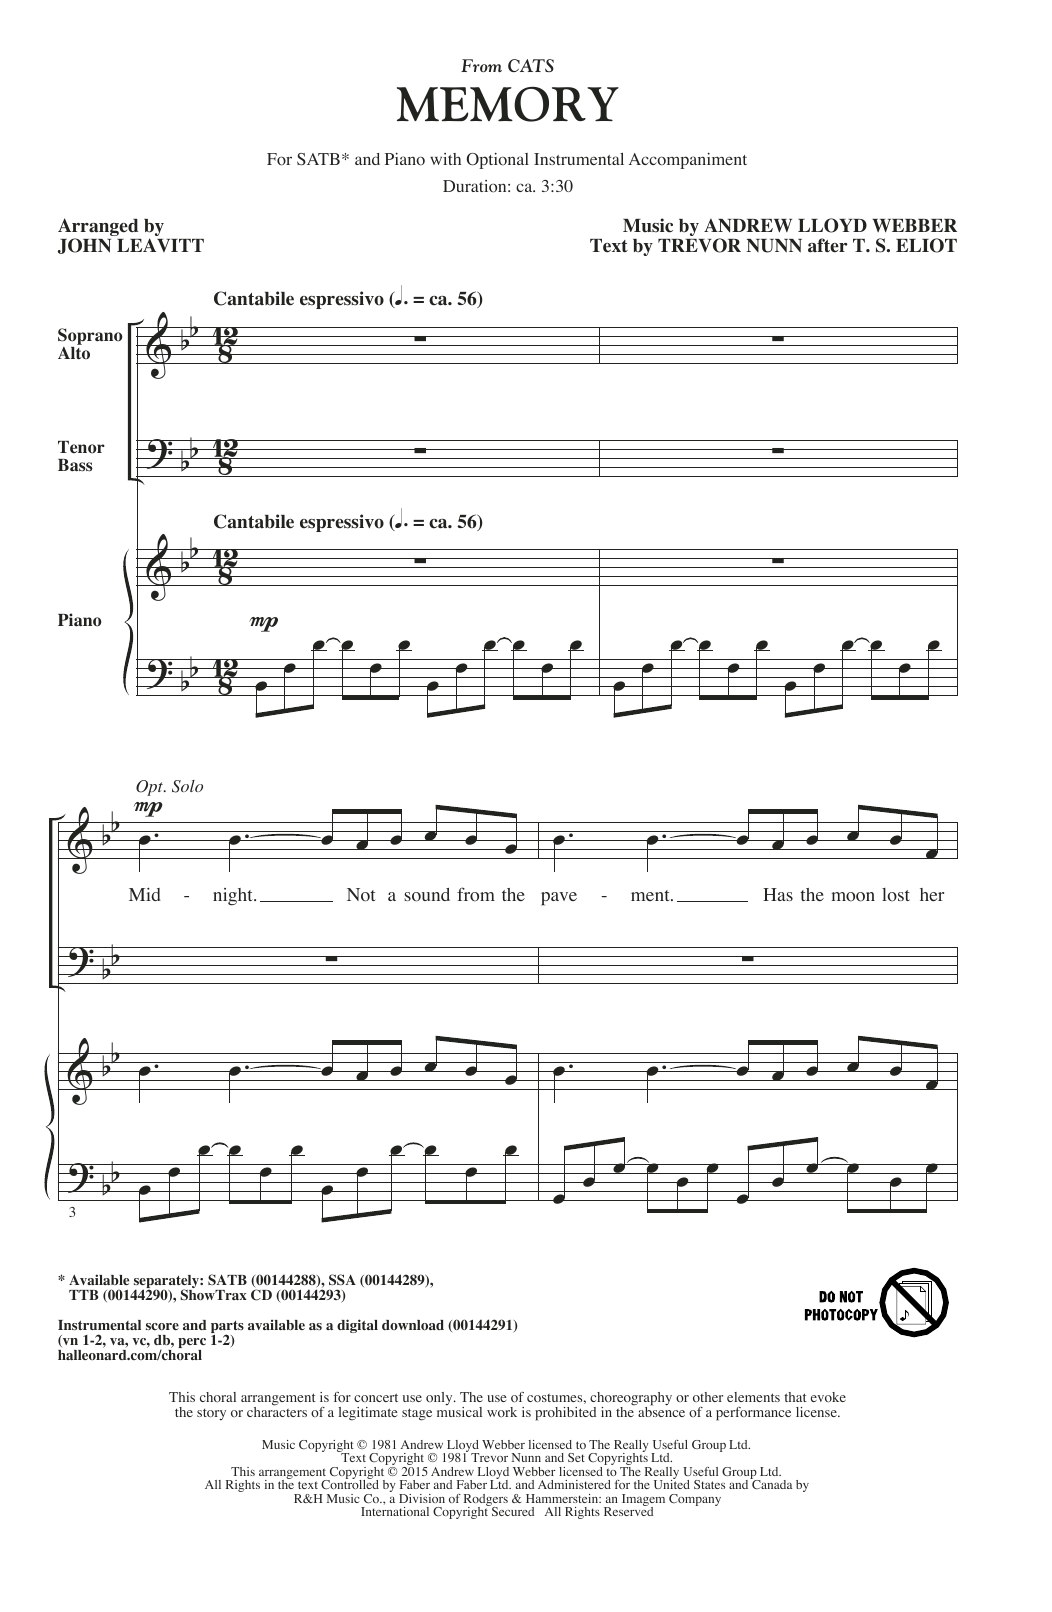 Andrew Lloyd Webber Memory (from Cats) (arr. John Leavitt) Sheet Music Notes & Chords for TTBB - Download or Print PDF